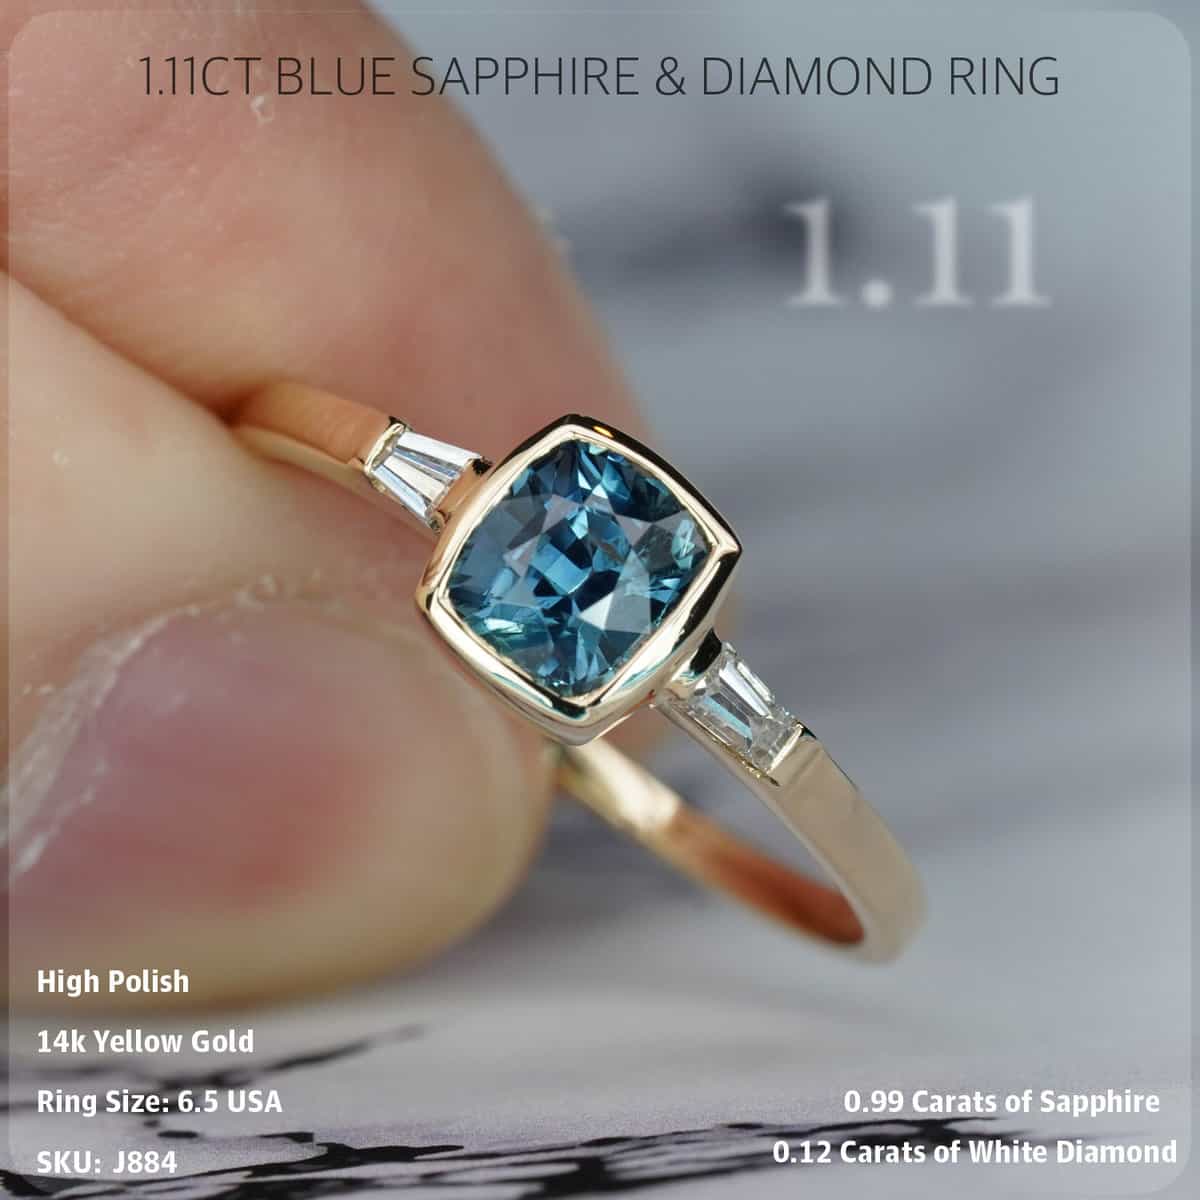 1.11CT Blue Sapphire & Diamond Ring